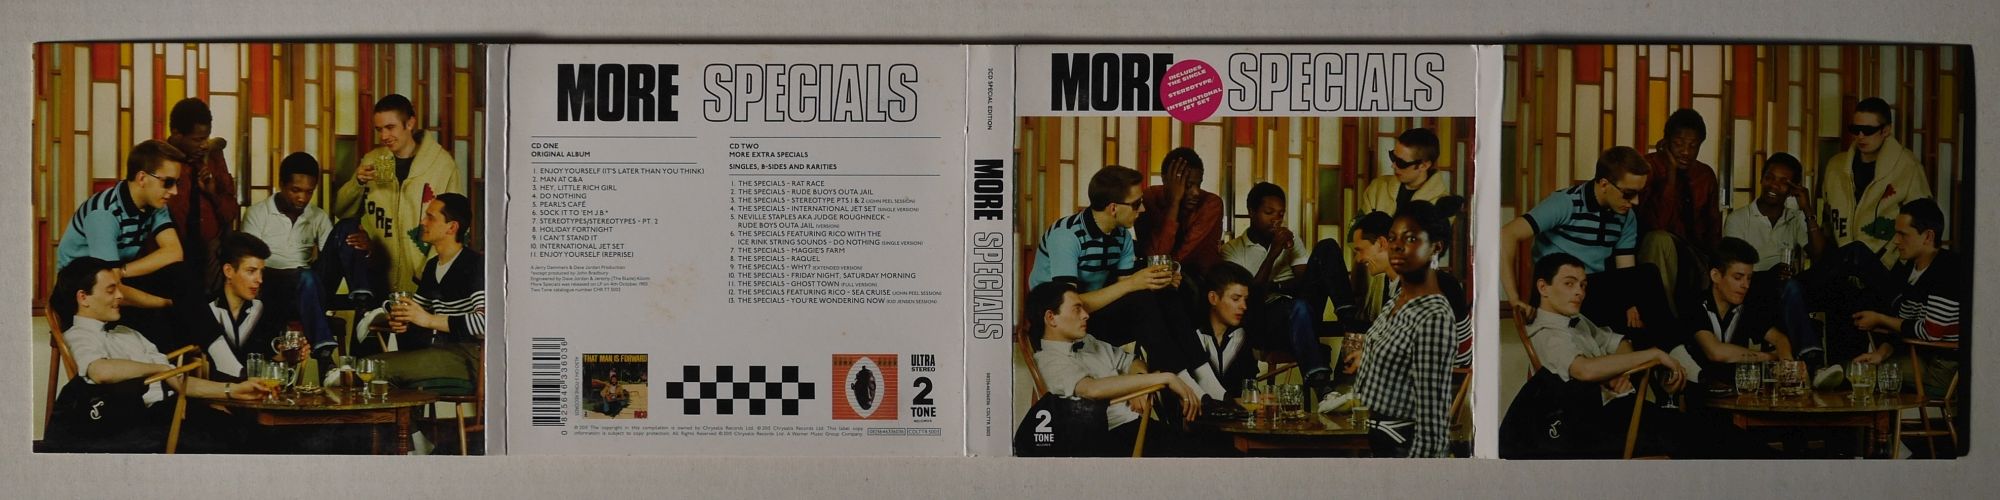 Specials『More Specials』01